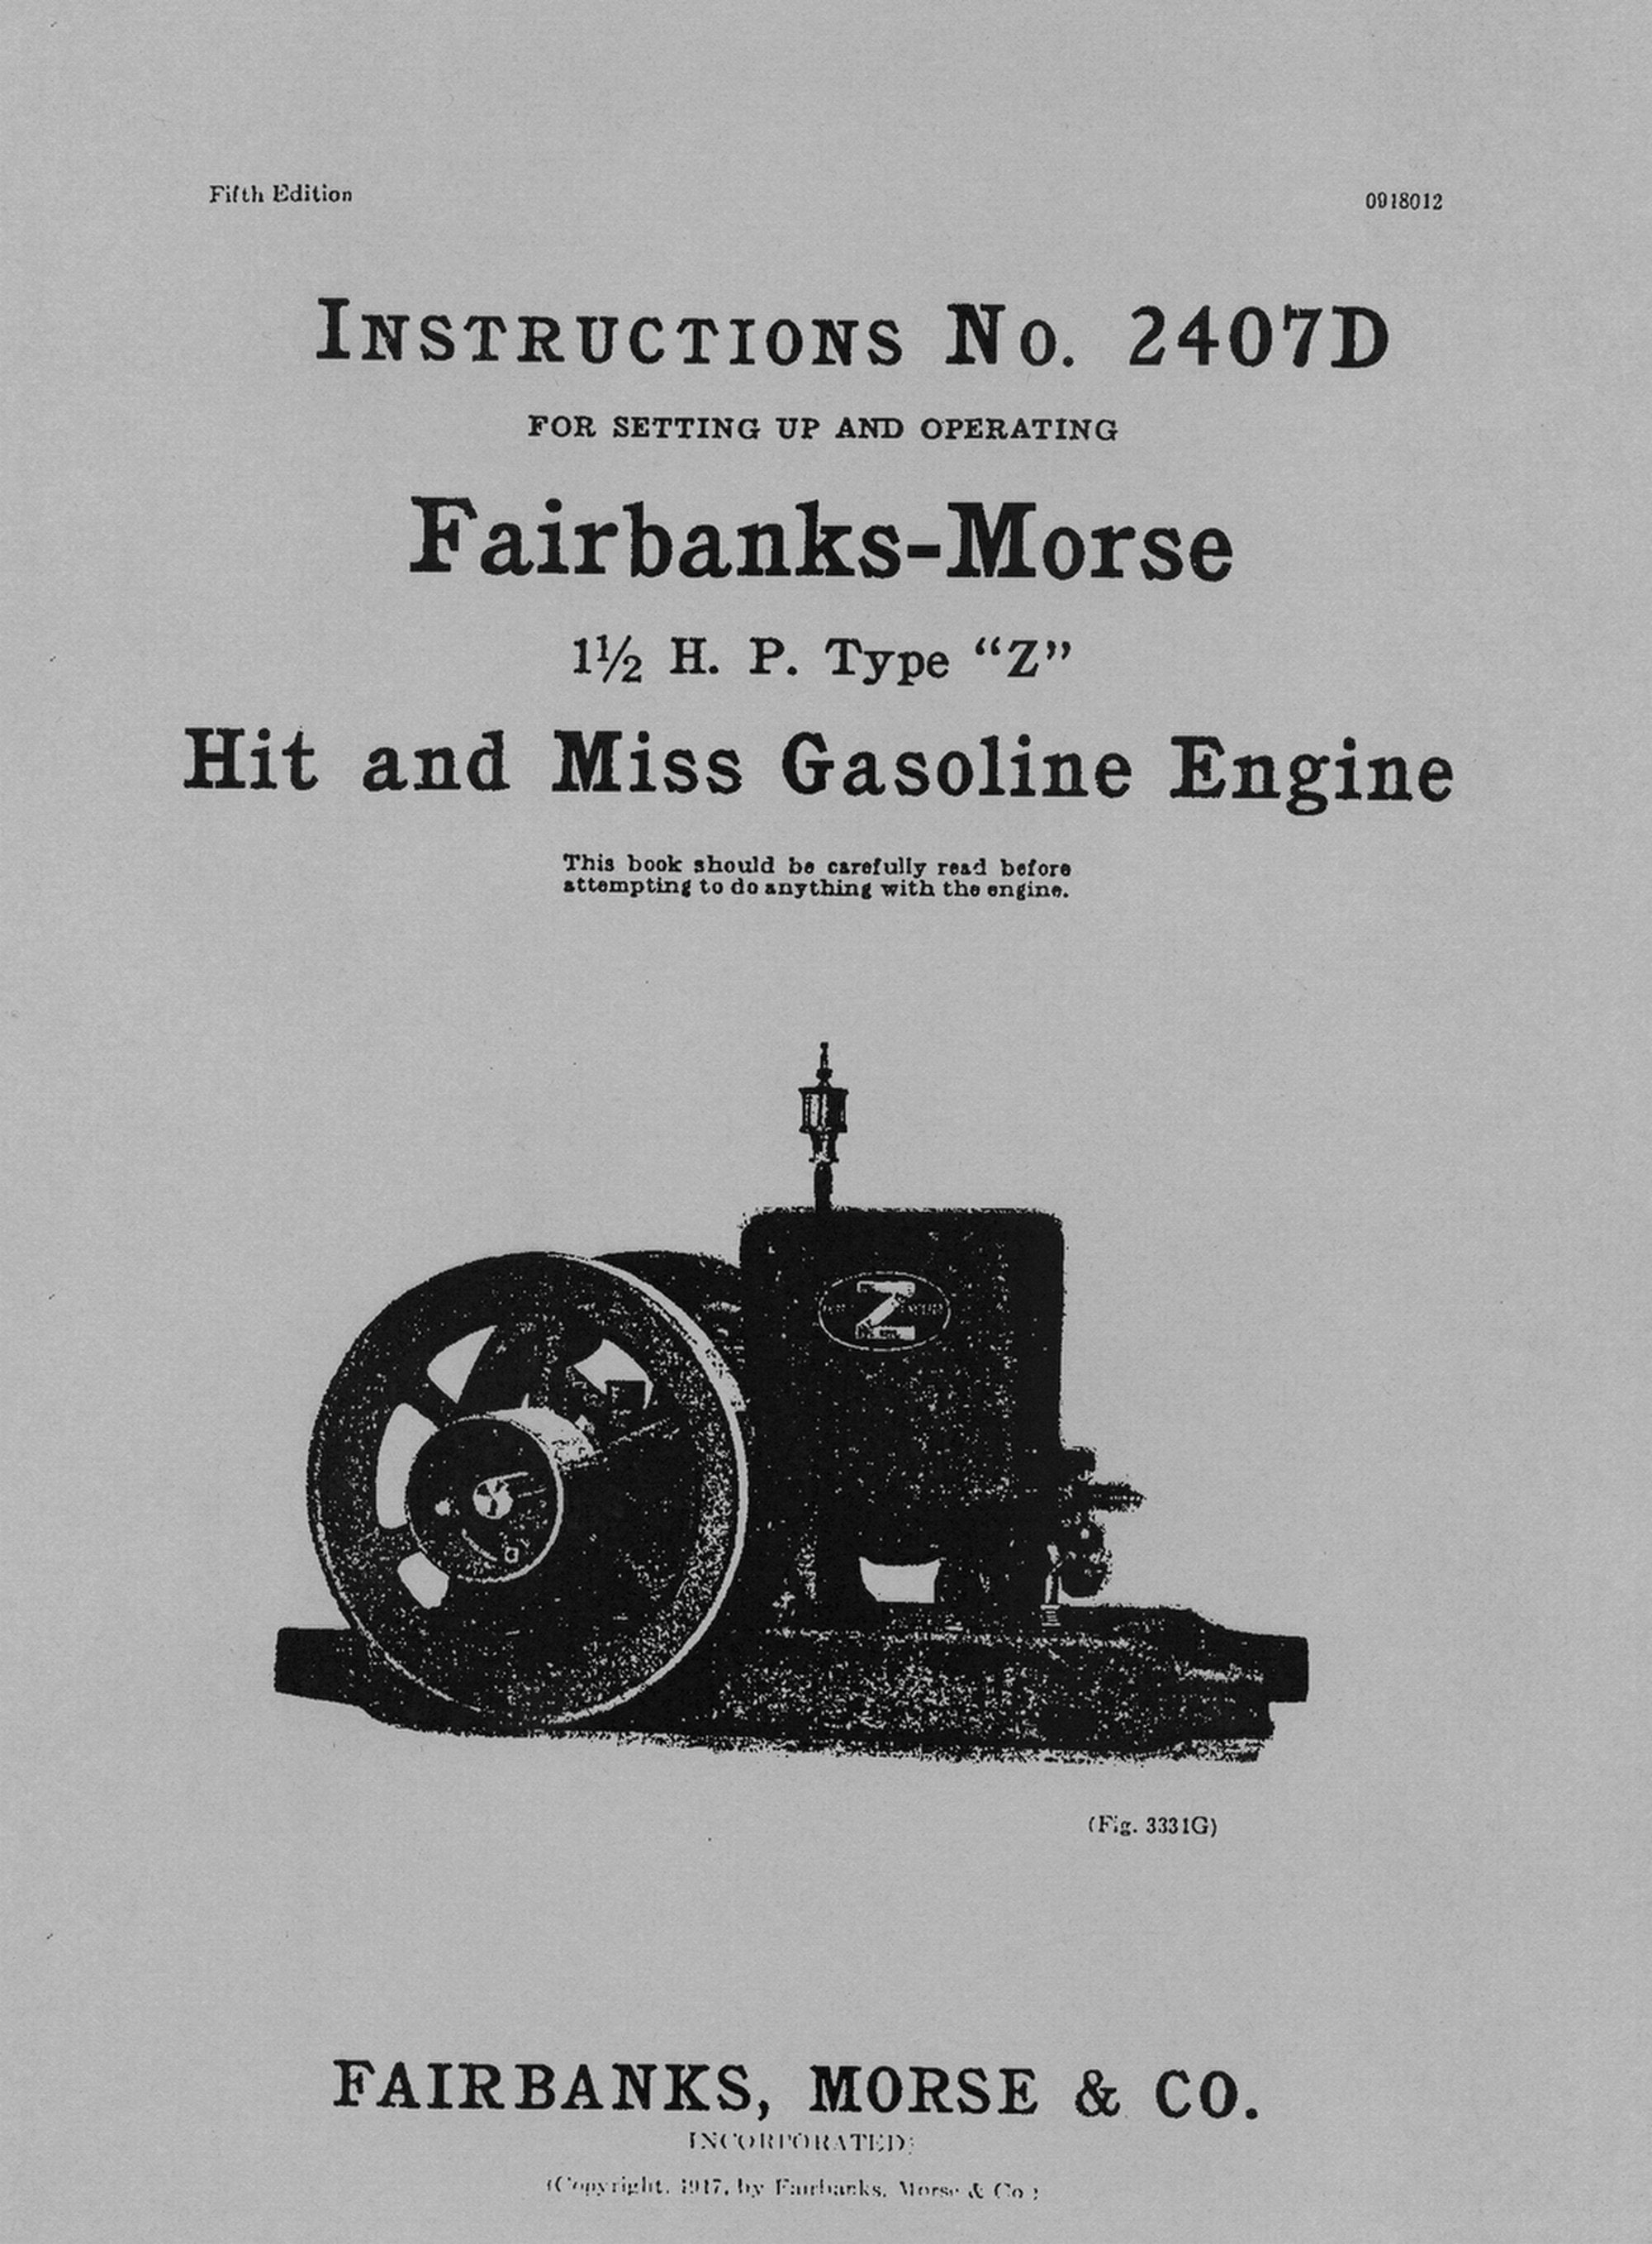 Fairbanks & Morse Co. Book Binding Press